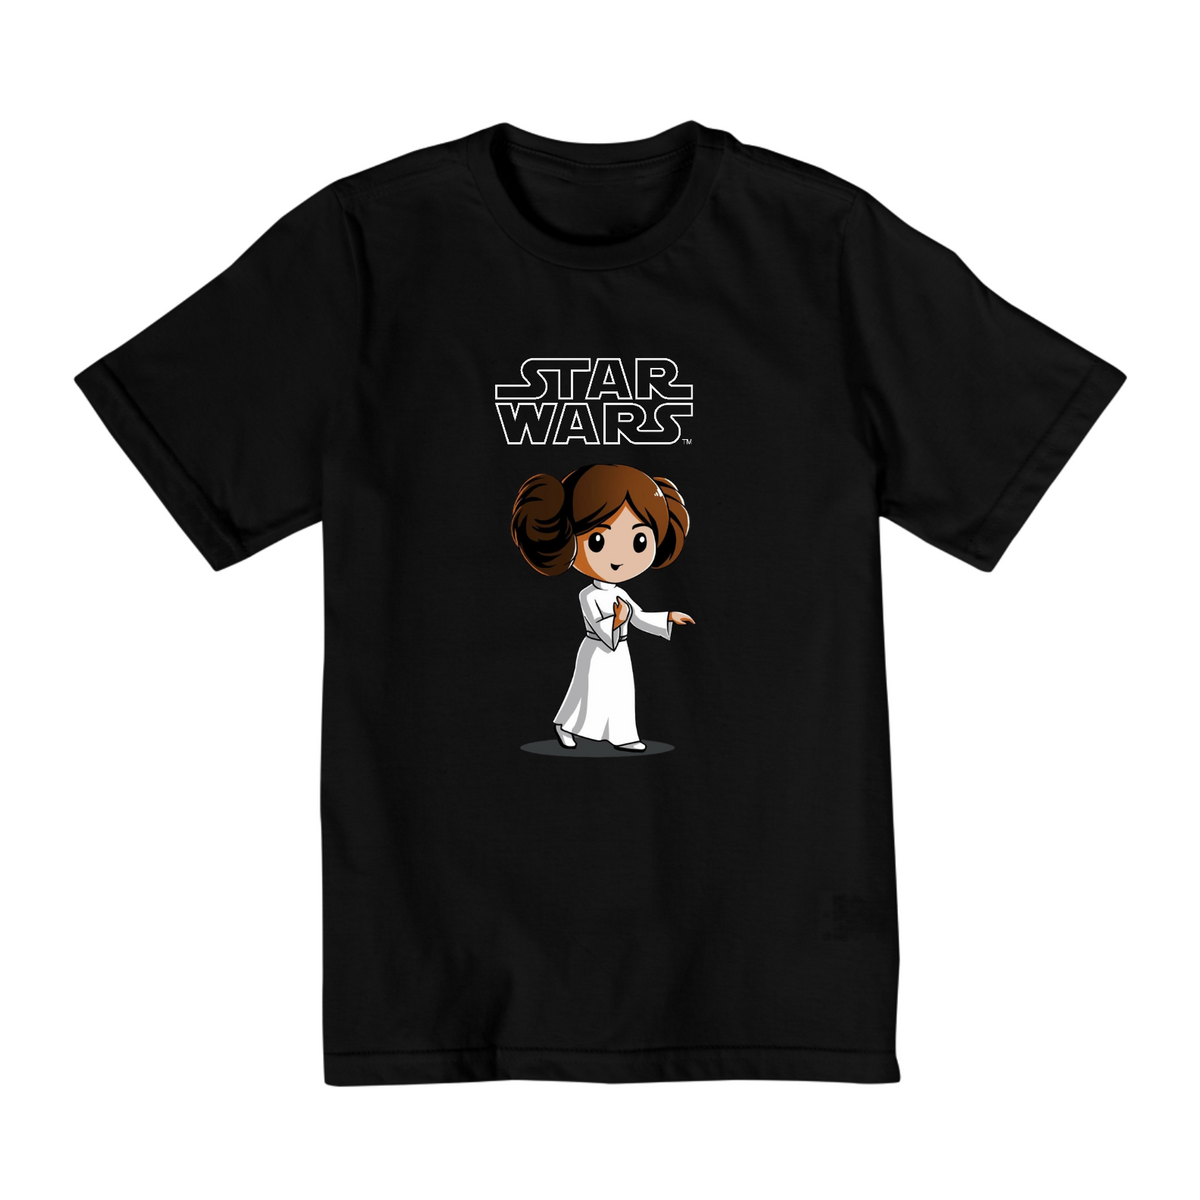 Nome do produto: Coleção Star Wars - Camiseta infantil 02 a 08 anos - Princesa Leia